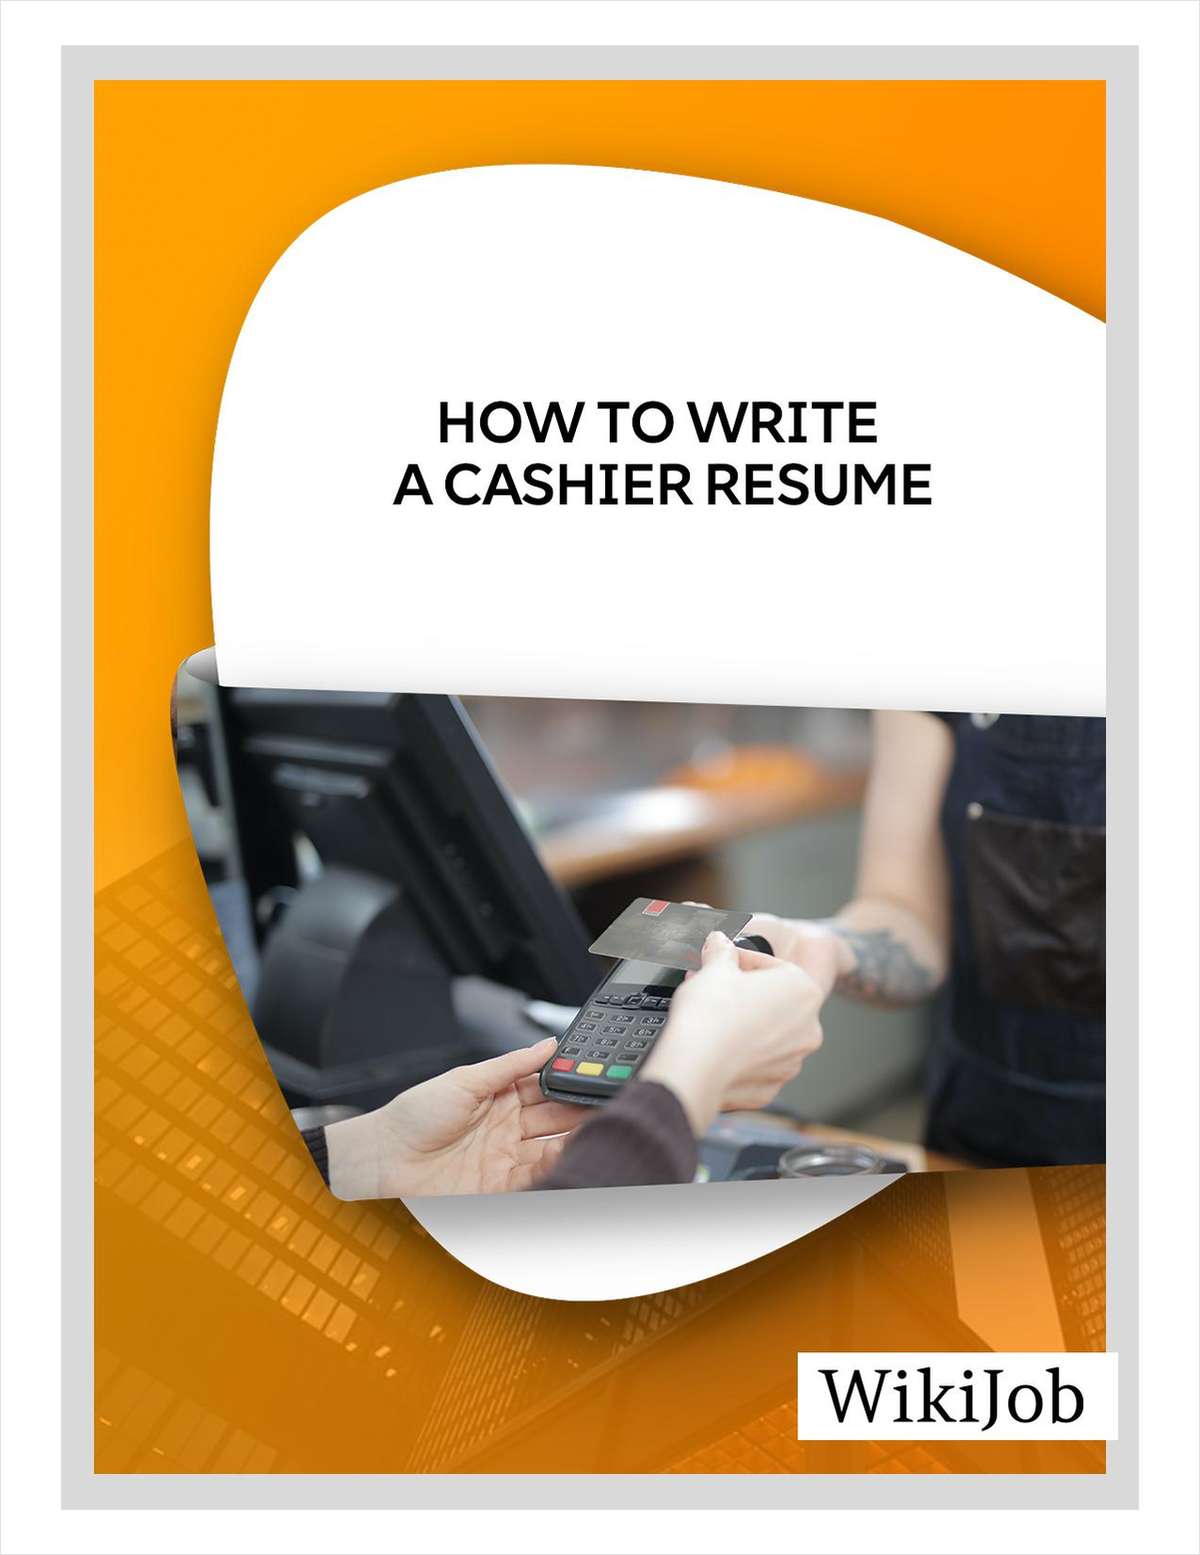 How to Write a Cashier Resume